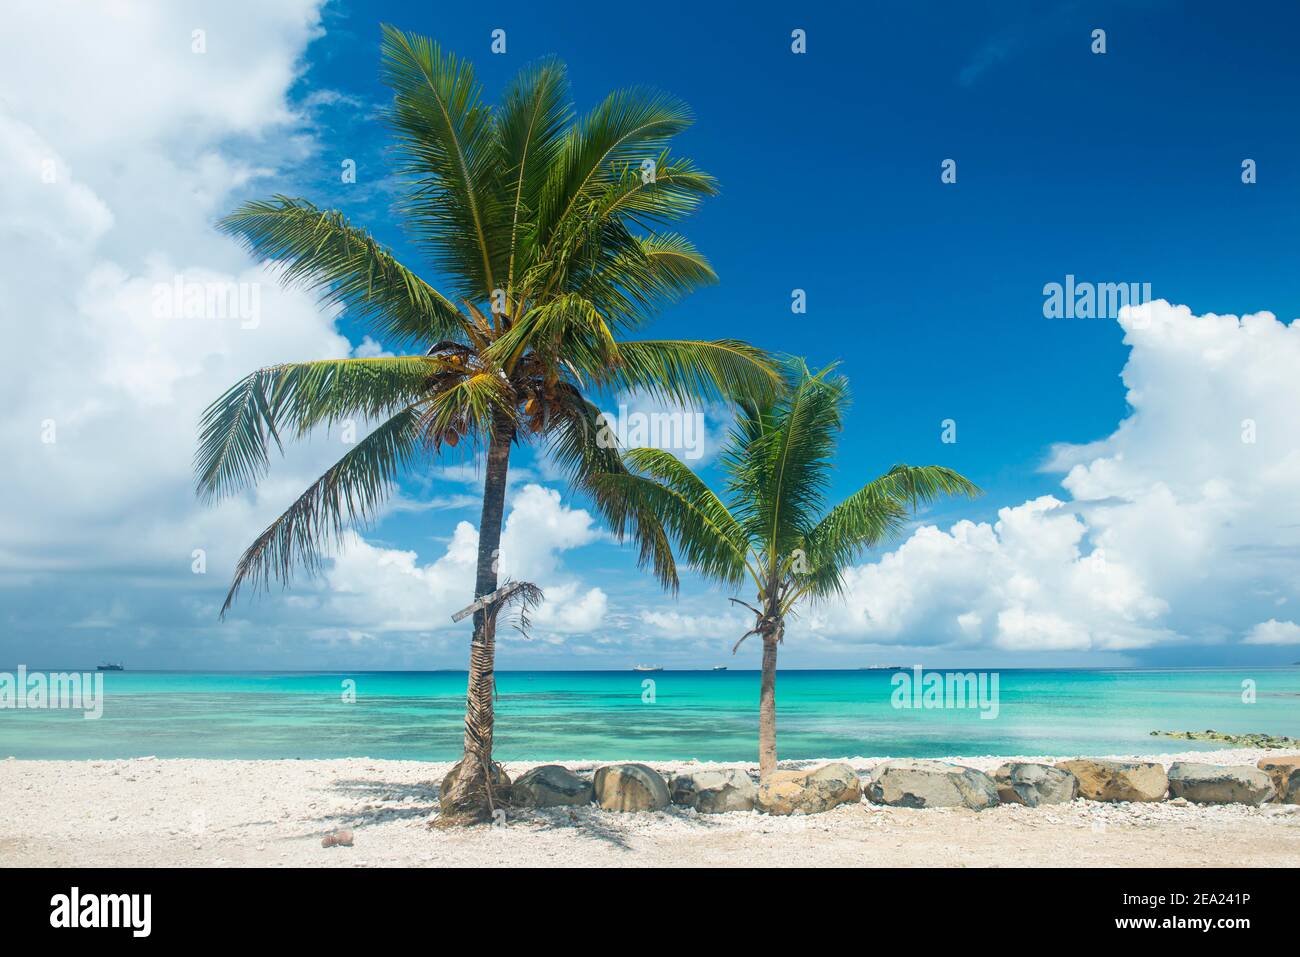 Palm trees in the beautiful lagoon of Funafuti, Tuvalu Stock Photo